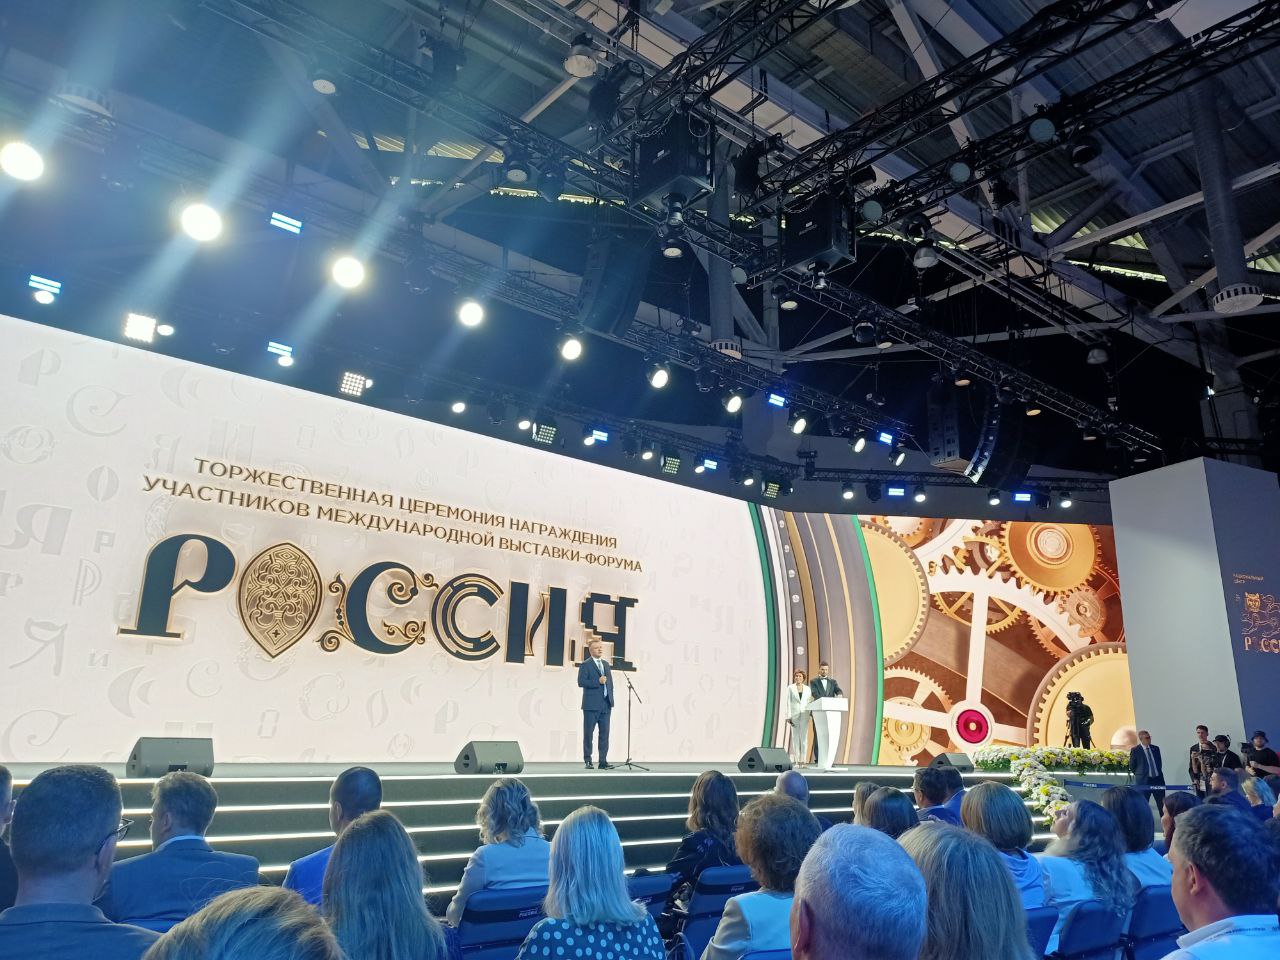 Регион взял награды за проведение выставки-форума «Россия» на ВДНХ